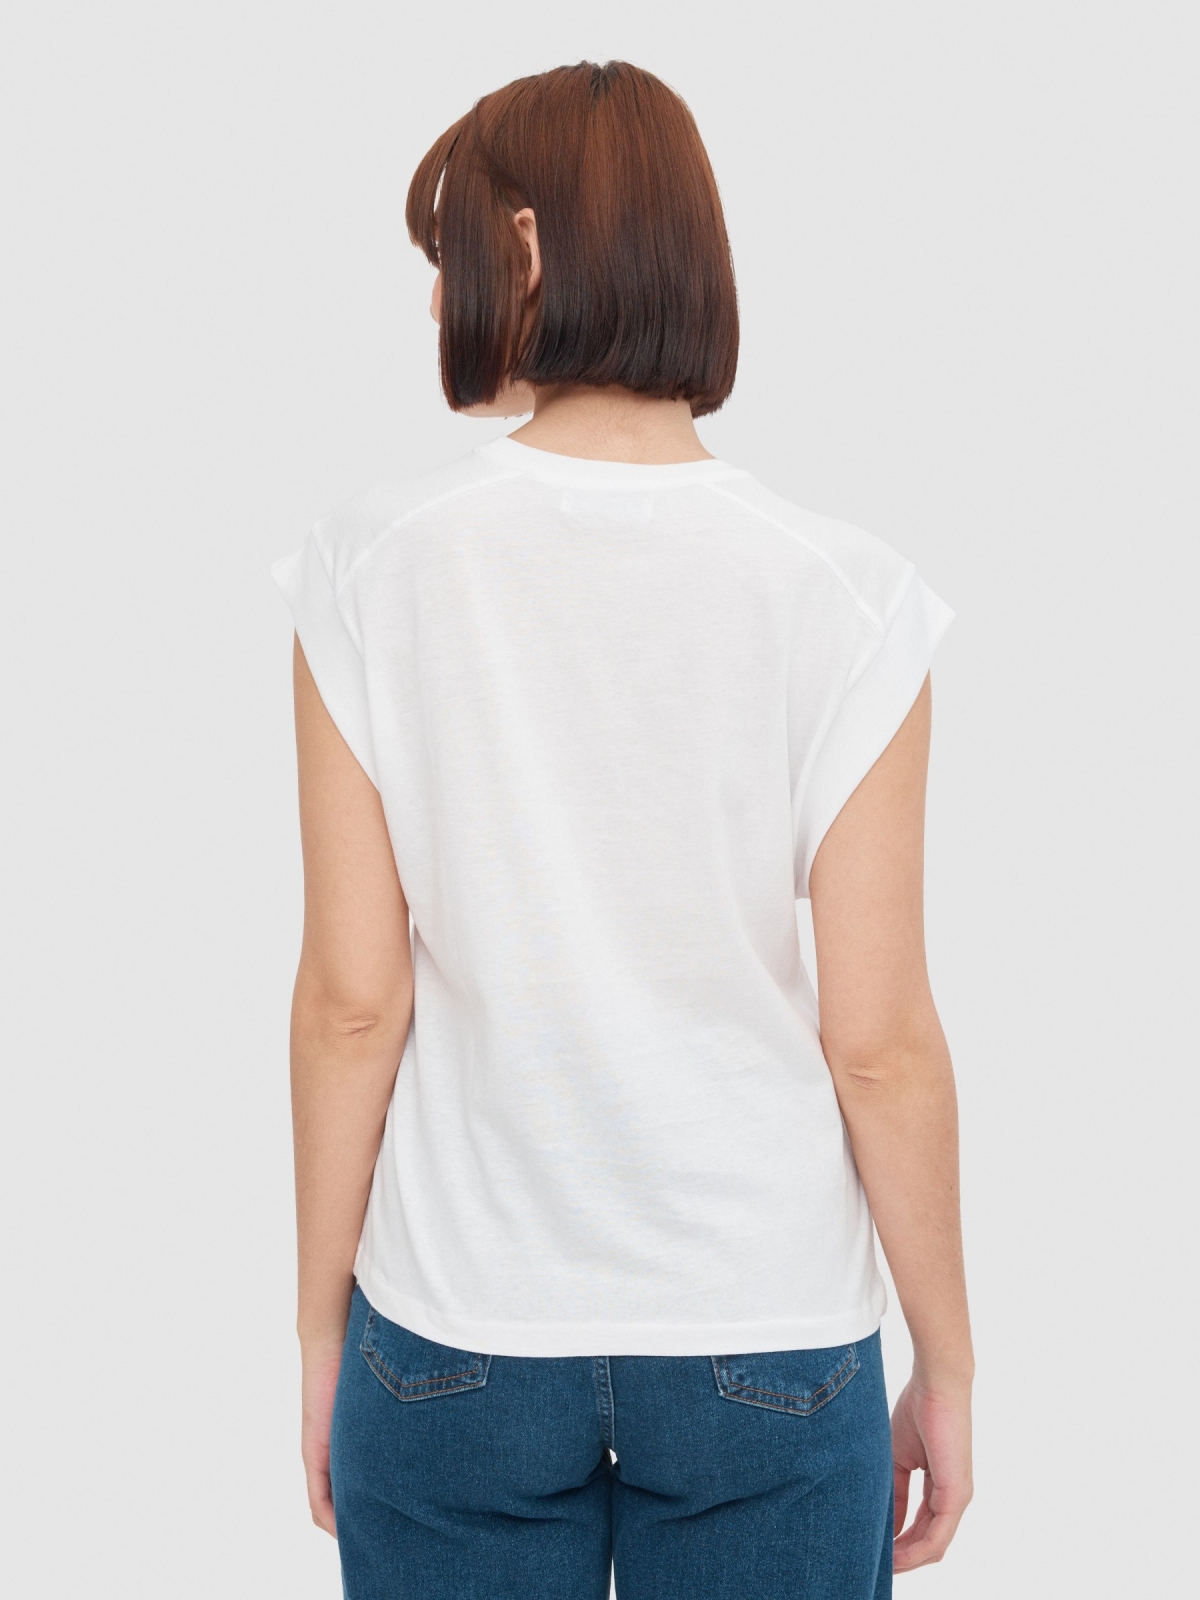 Camiseta rib sin mangas blanco vista media trasera